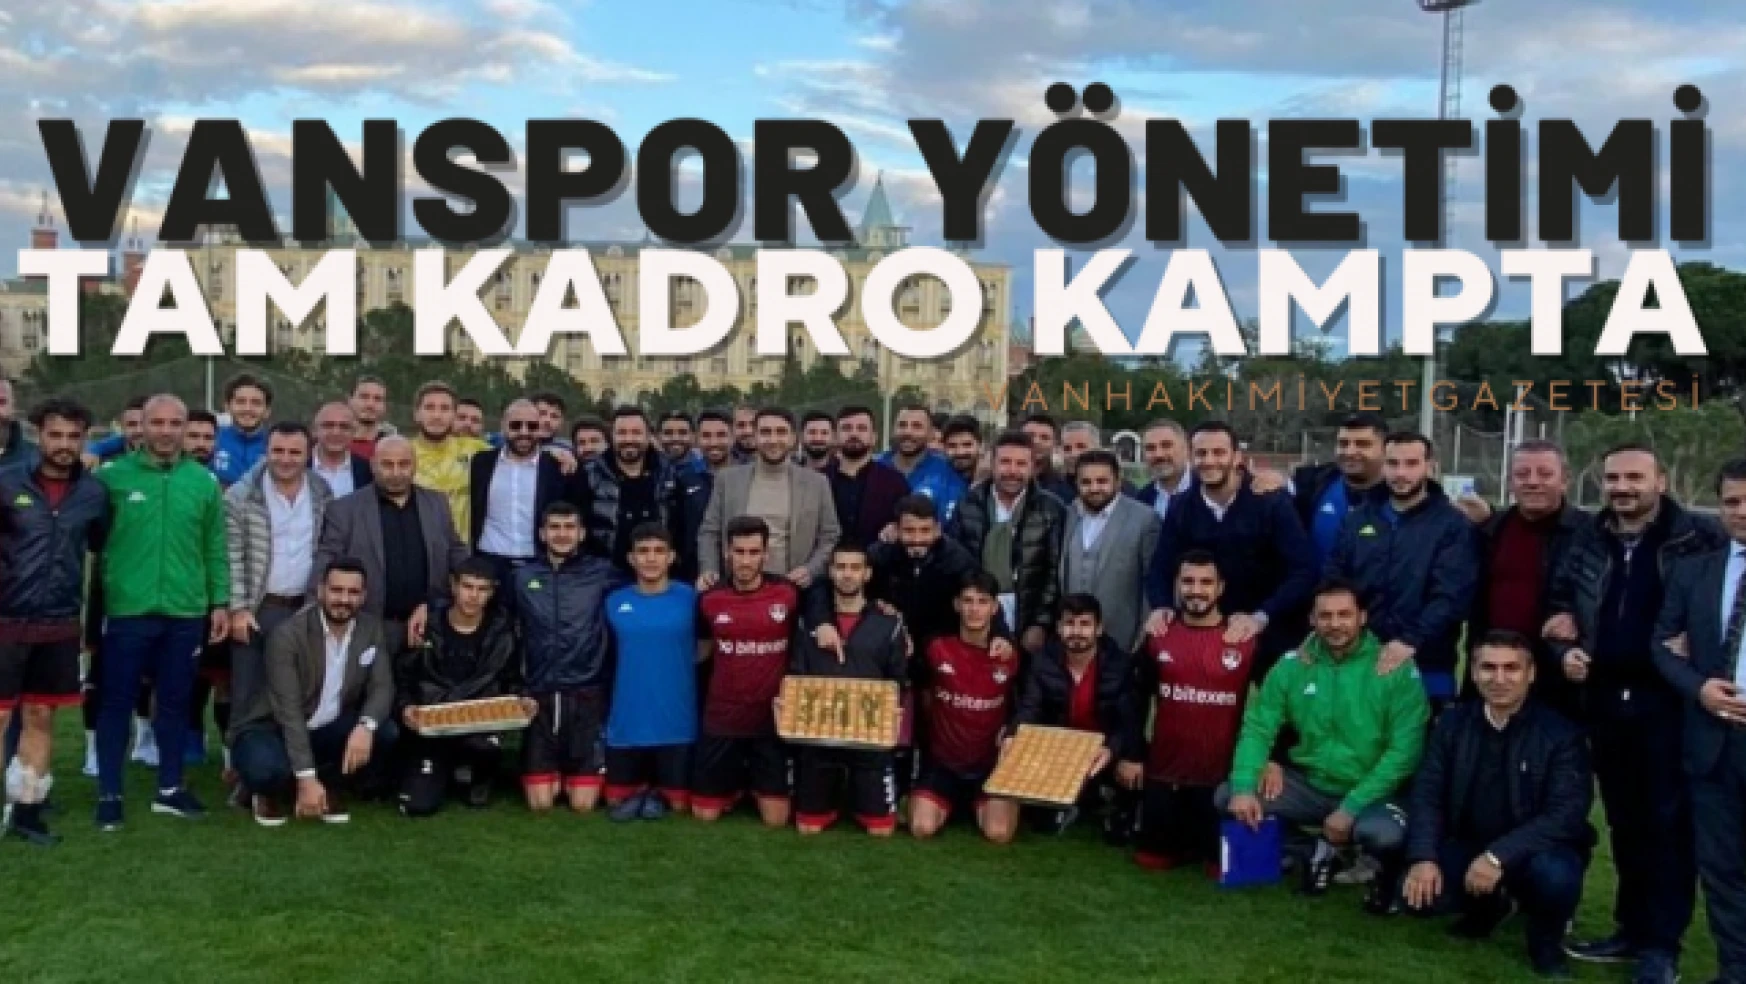 Vanspor FK yöneticileri tam kadro kampta!